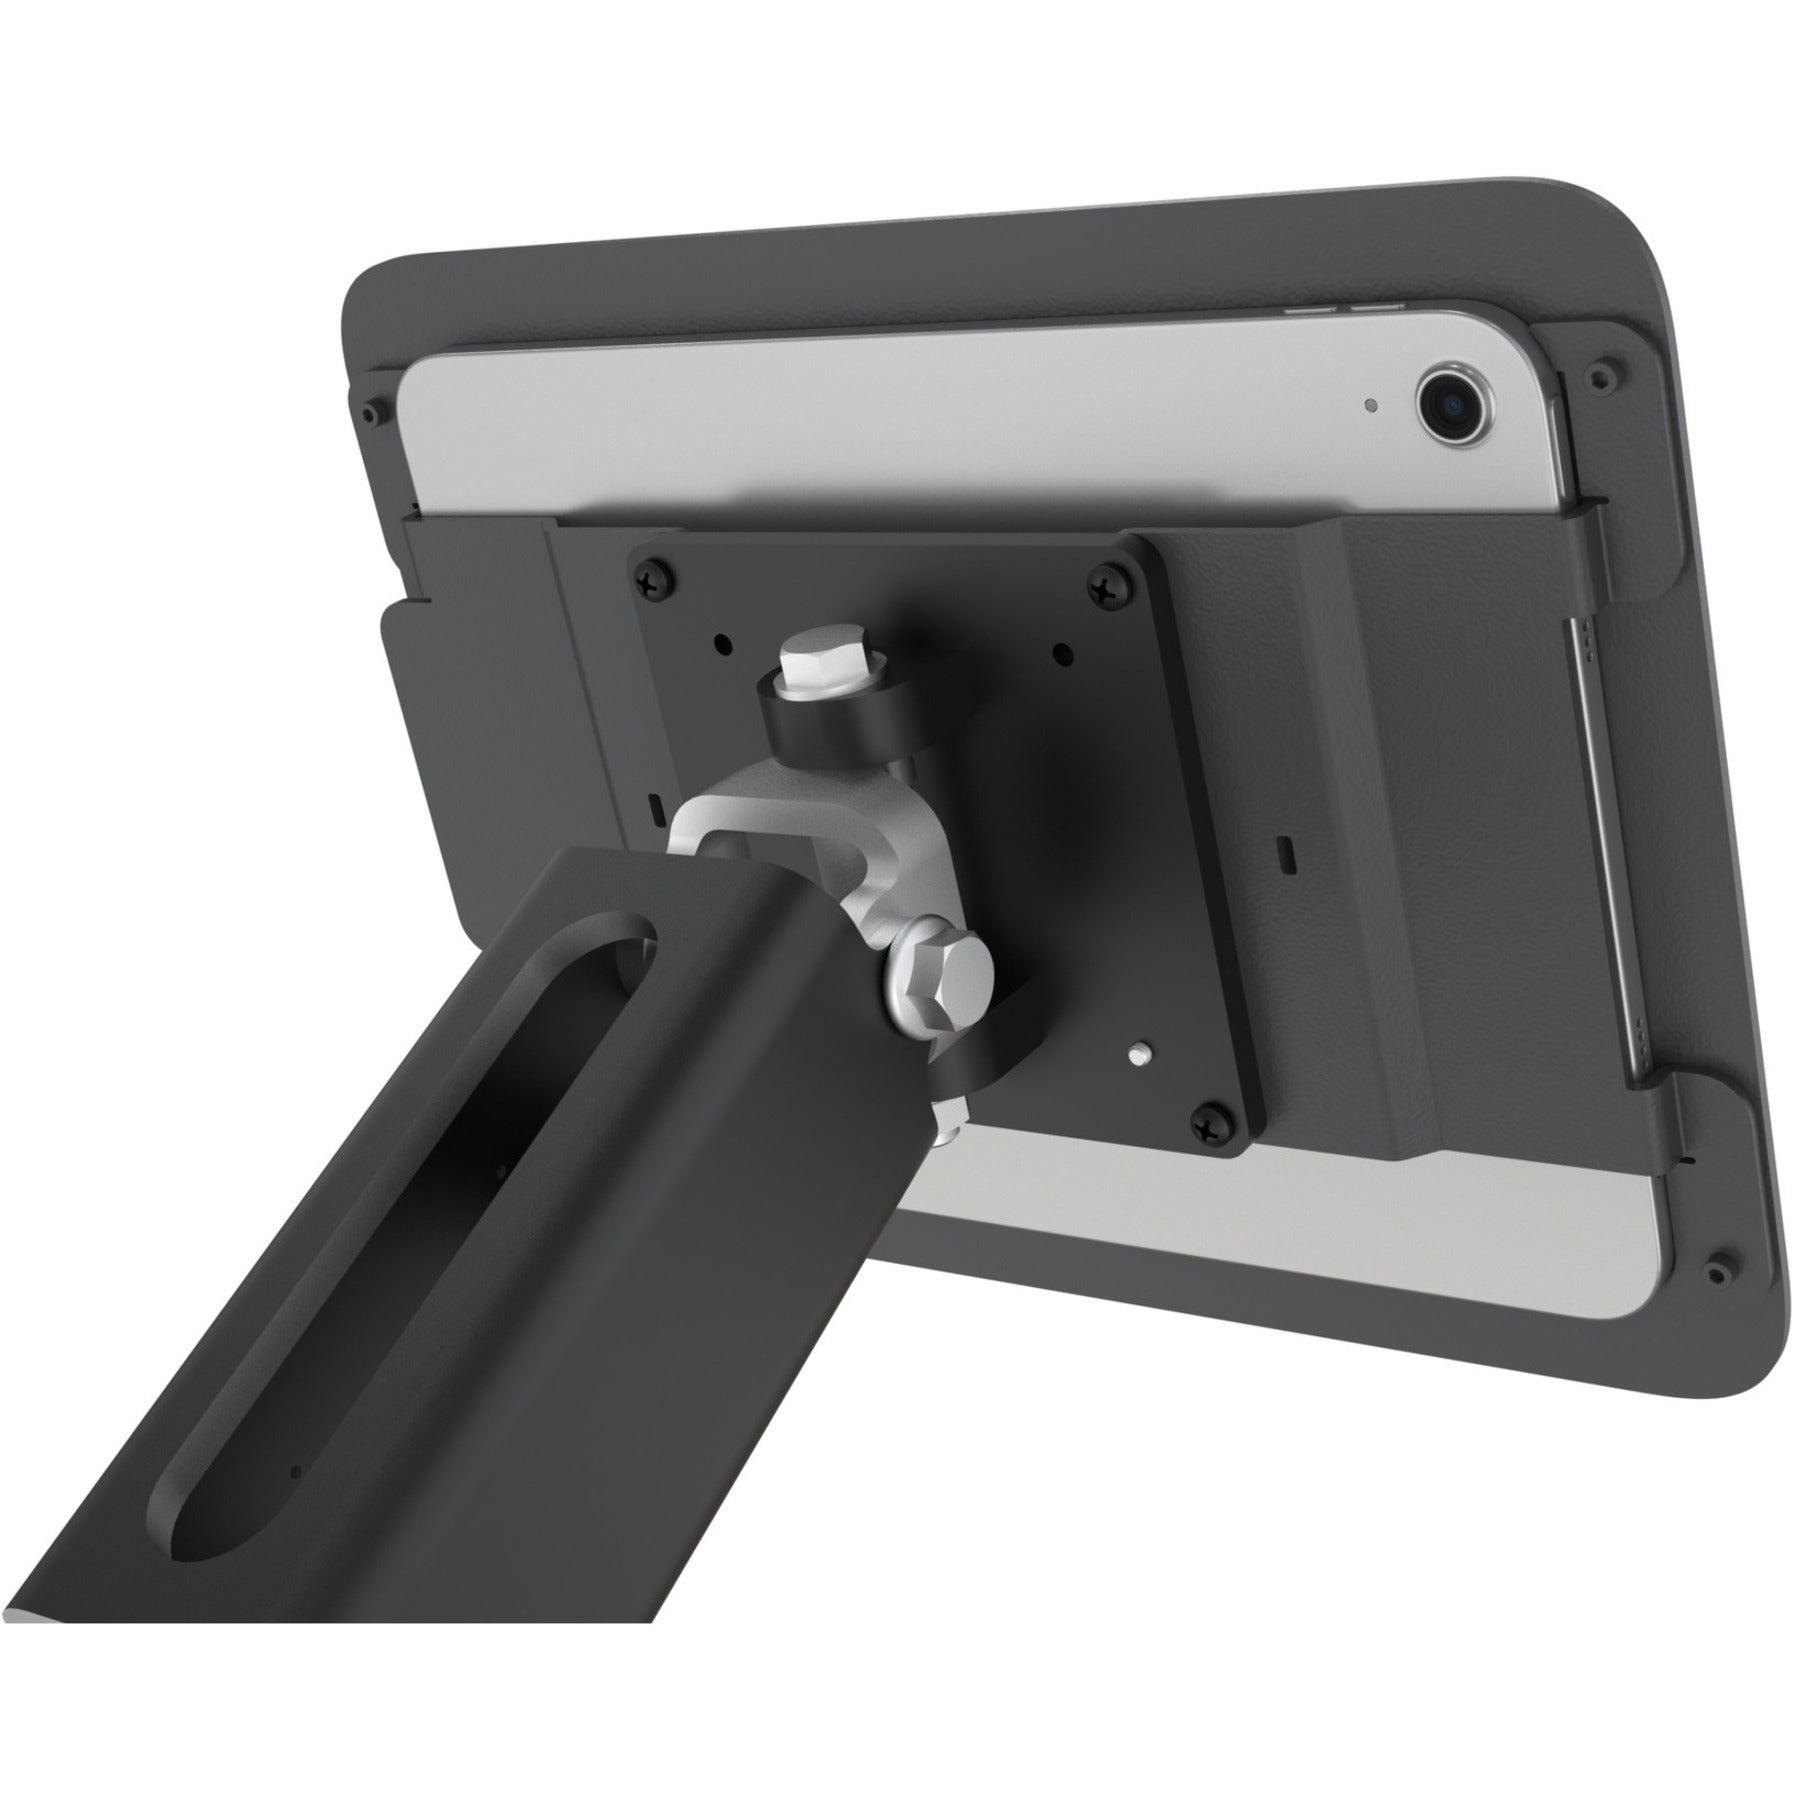 Heckler Design H757-BG VESA Mount for iPad 10th Generation, Durable, Scratch Resistant, Fingerprint Resistant, Security Lock